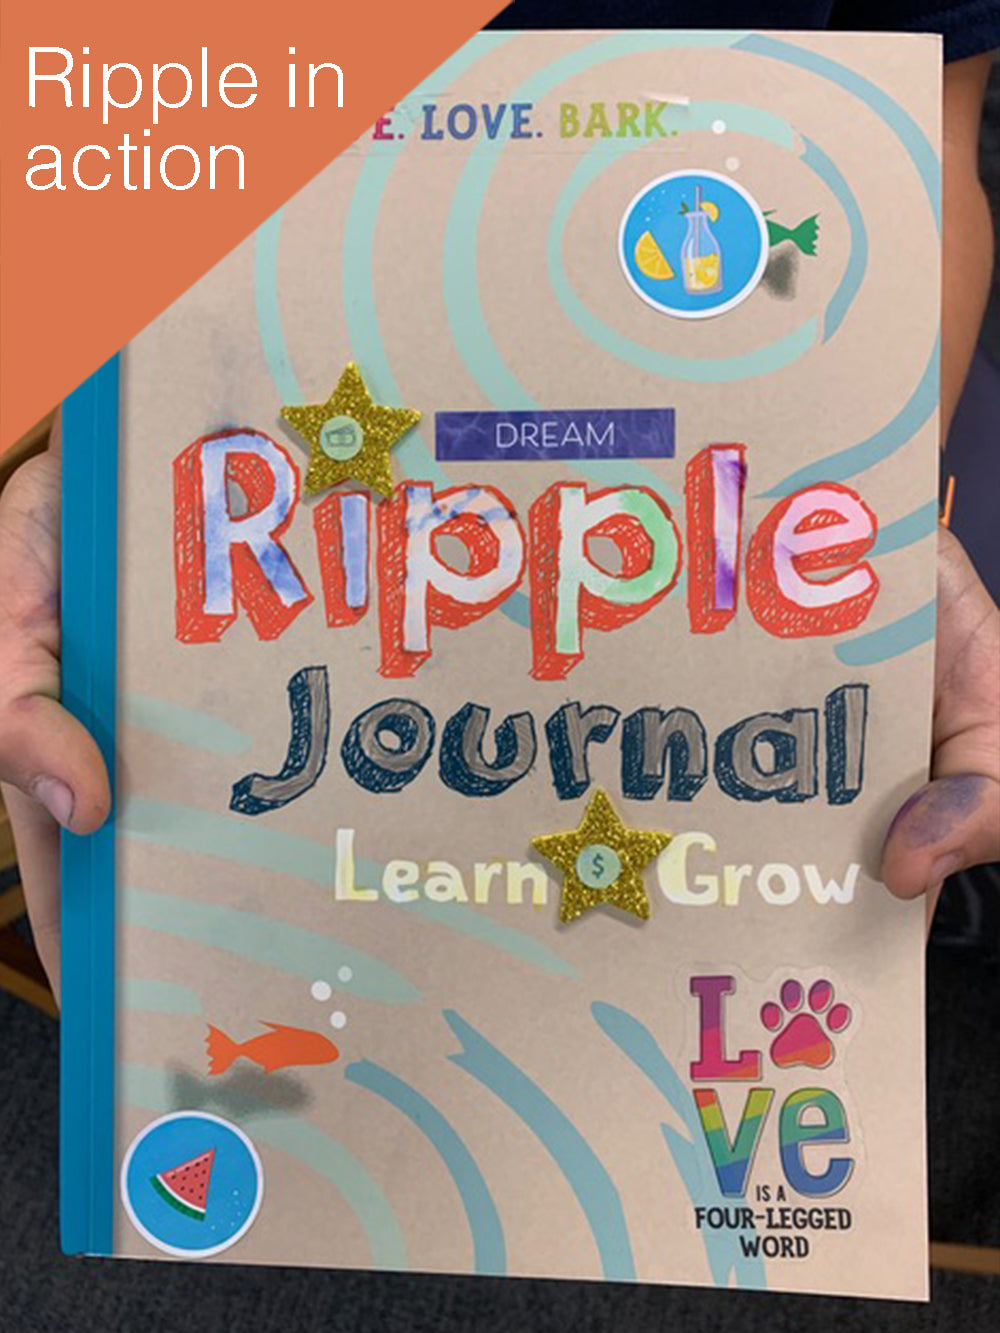 Ripple Journal Learn & Grow